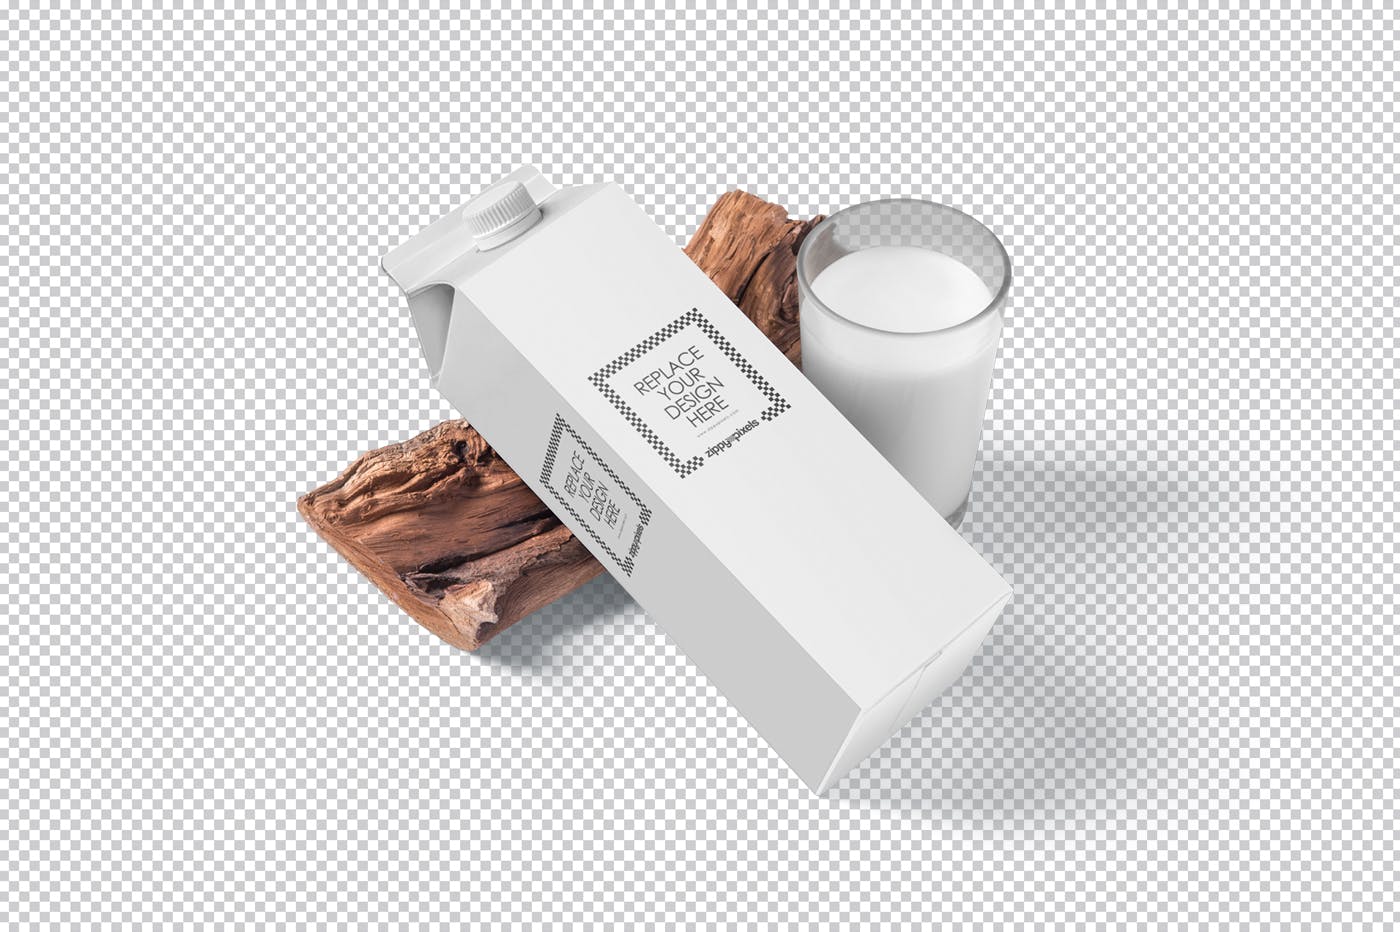 纸盒包装外观设计效果图样机 Juice Carton Box Packaging Mockups设计素材模板